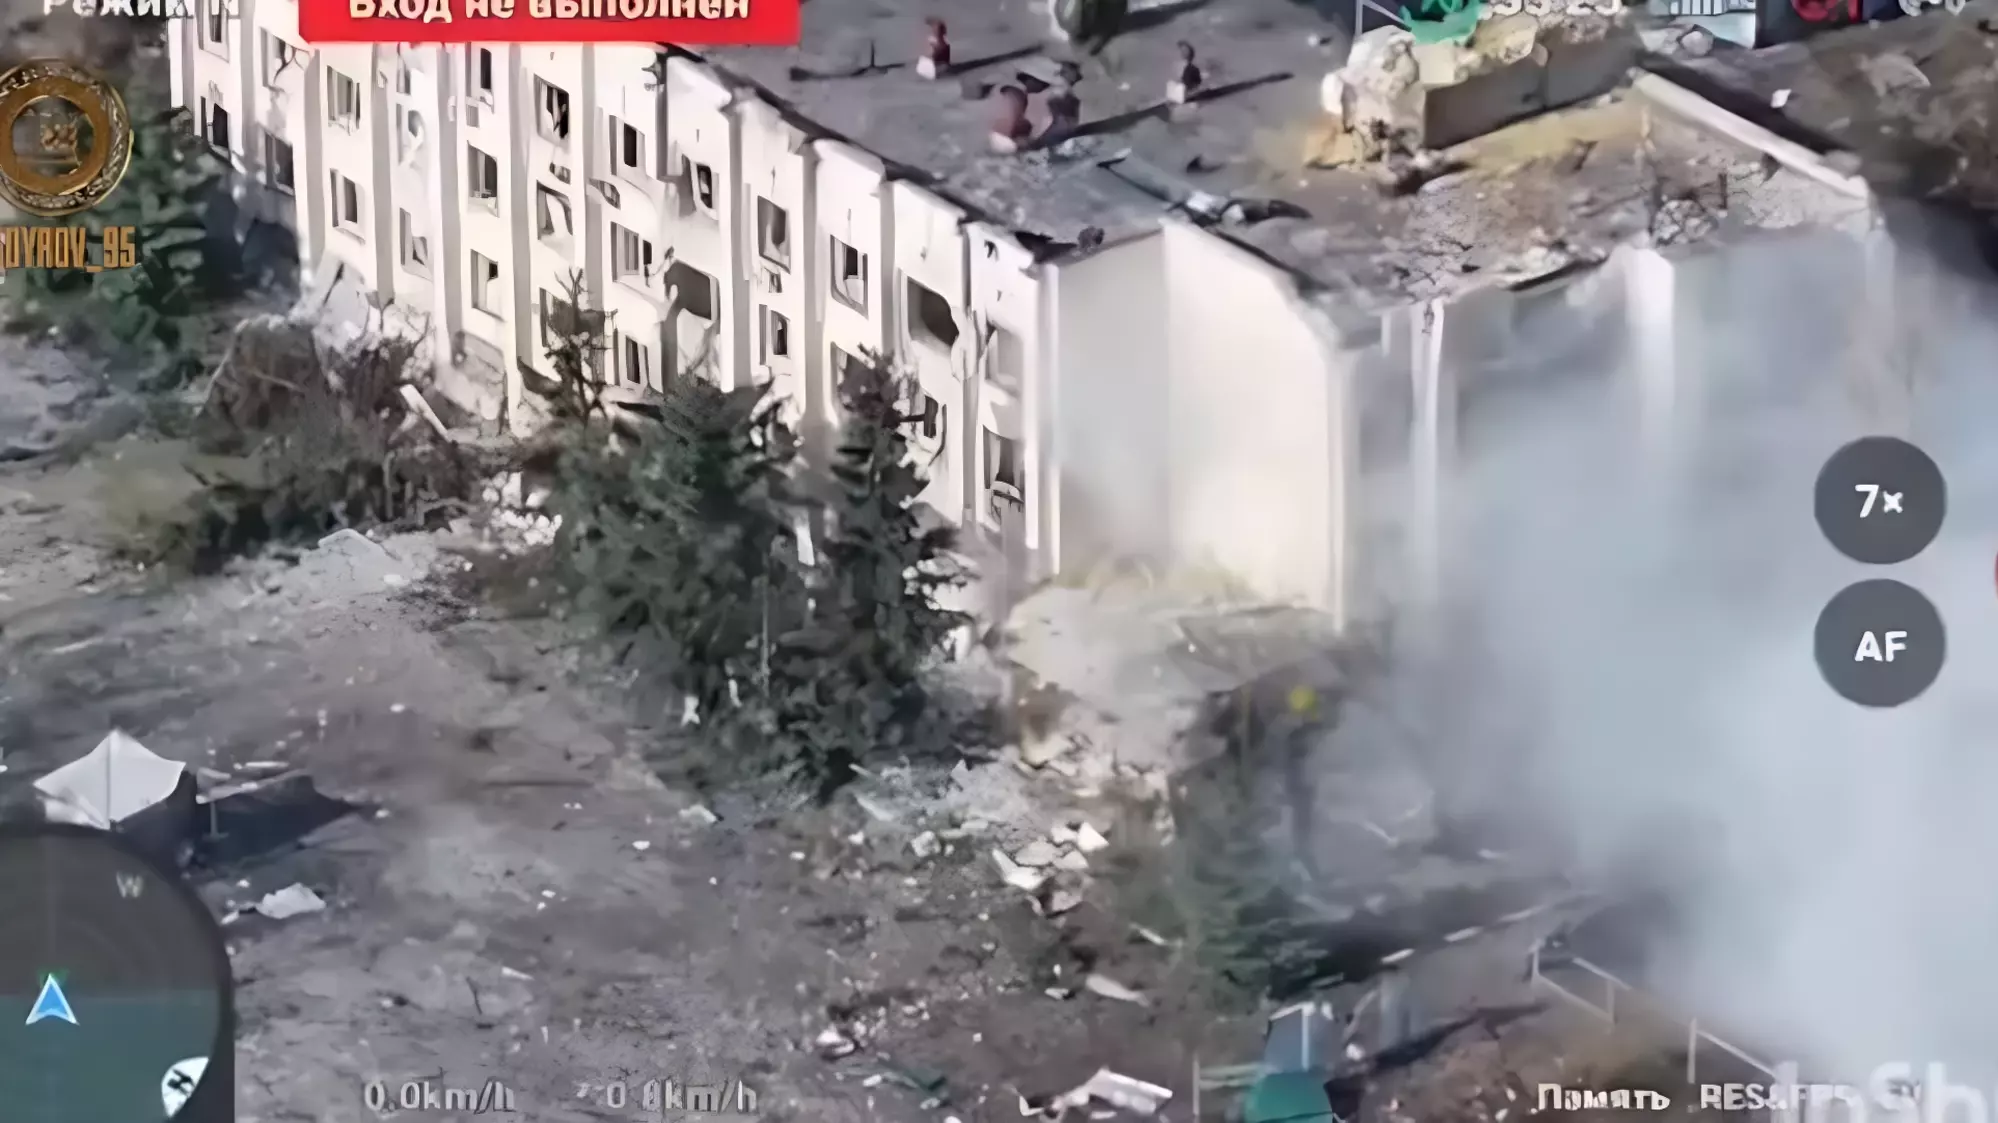 Рамзан Кадыров опубликовал кадры уничтожения украинских диверсантов, планировавших прорыв через границу